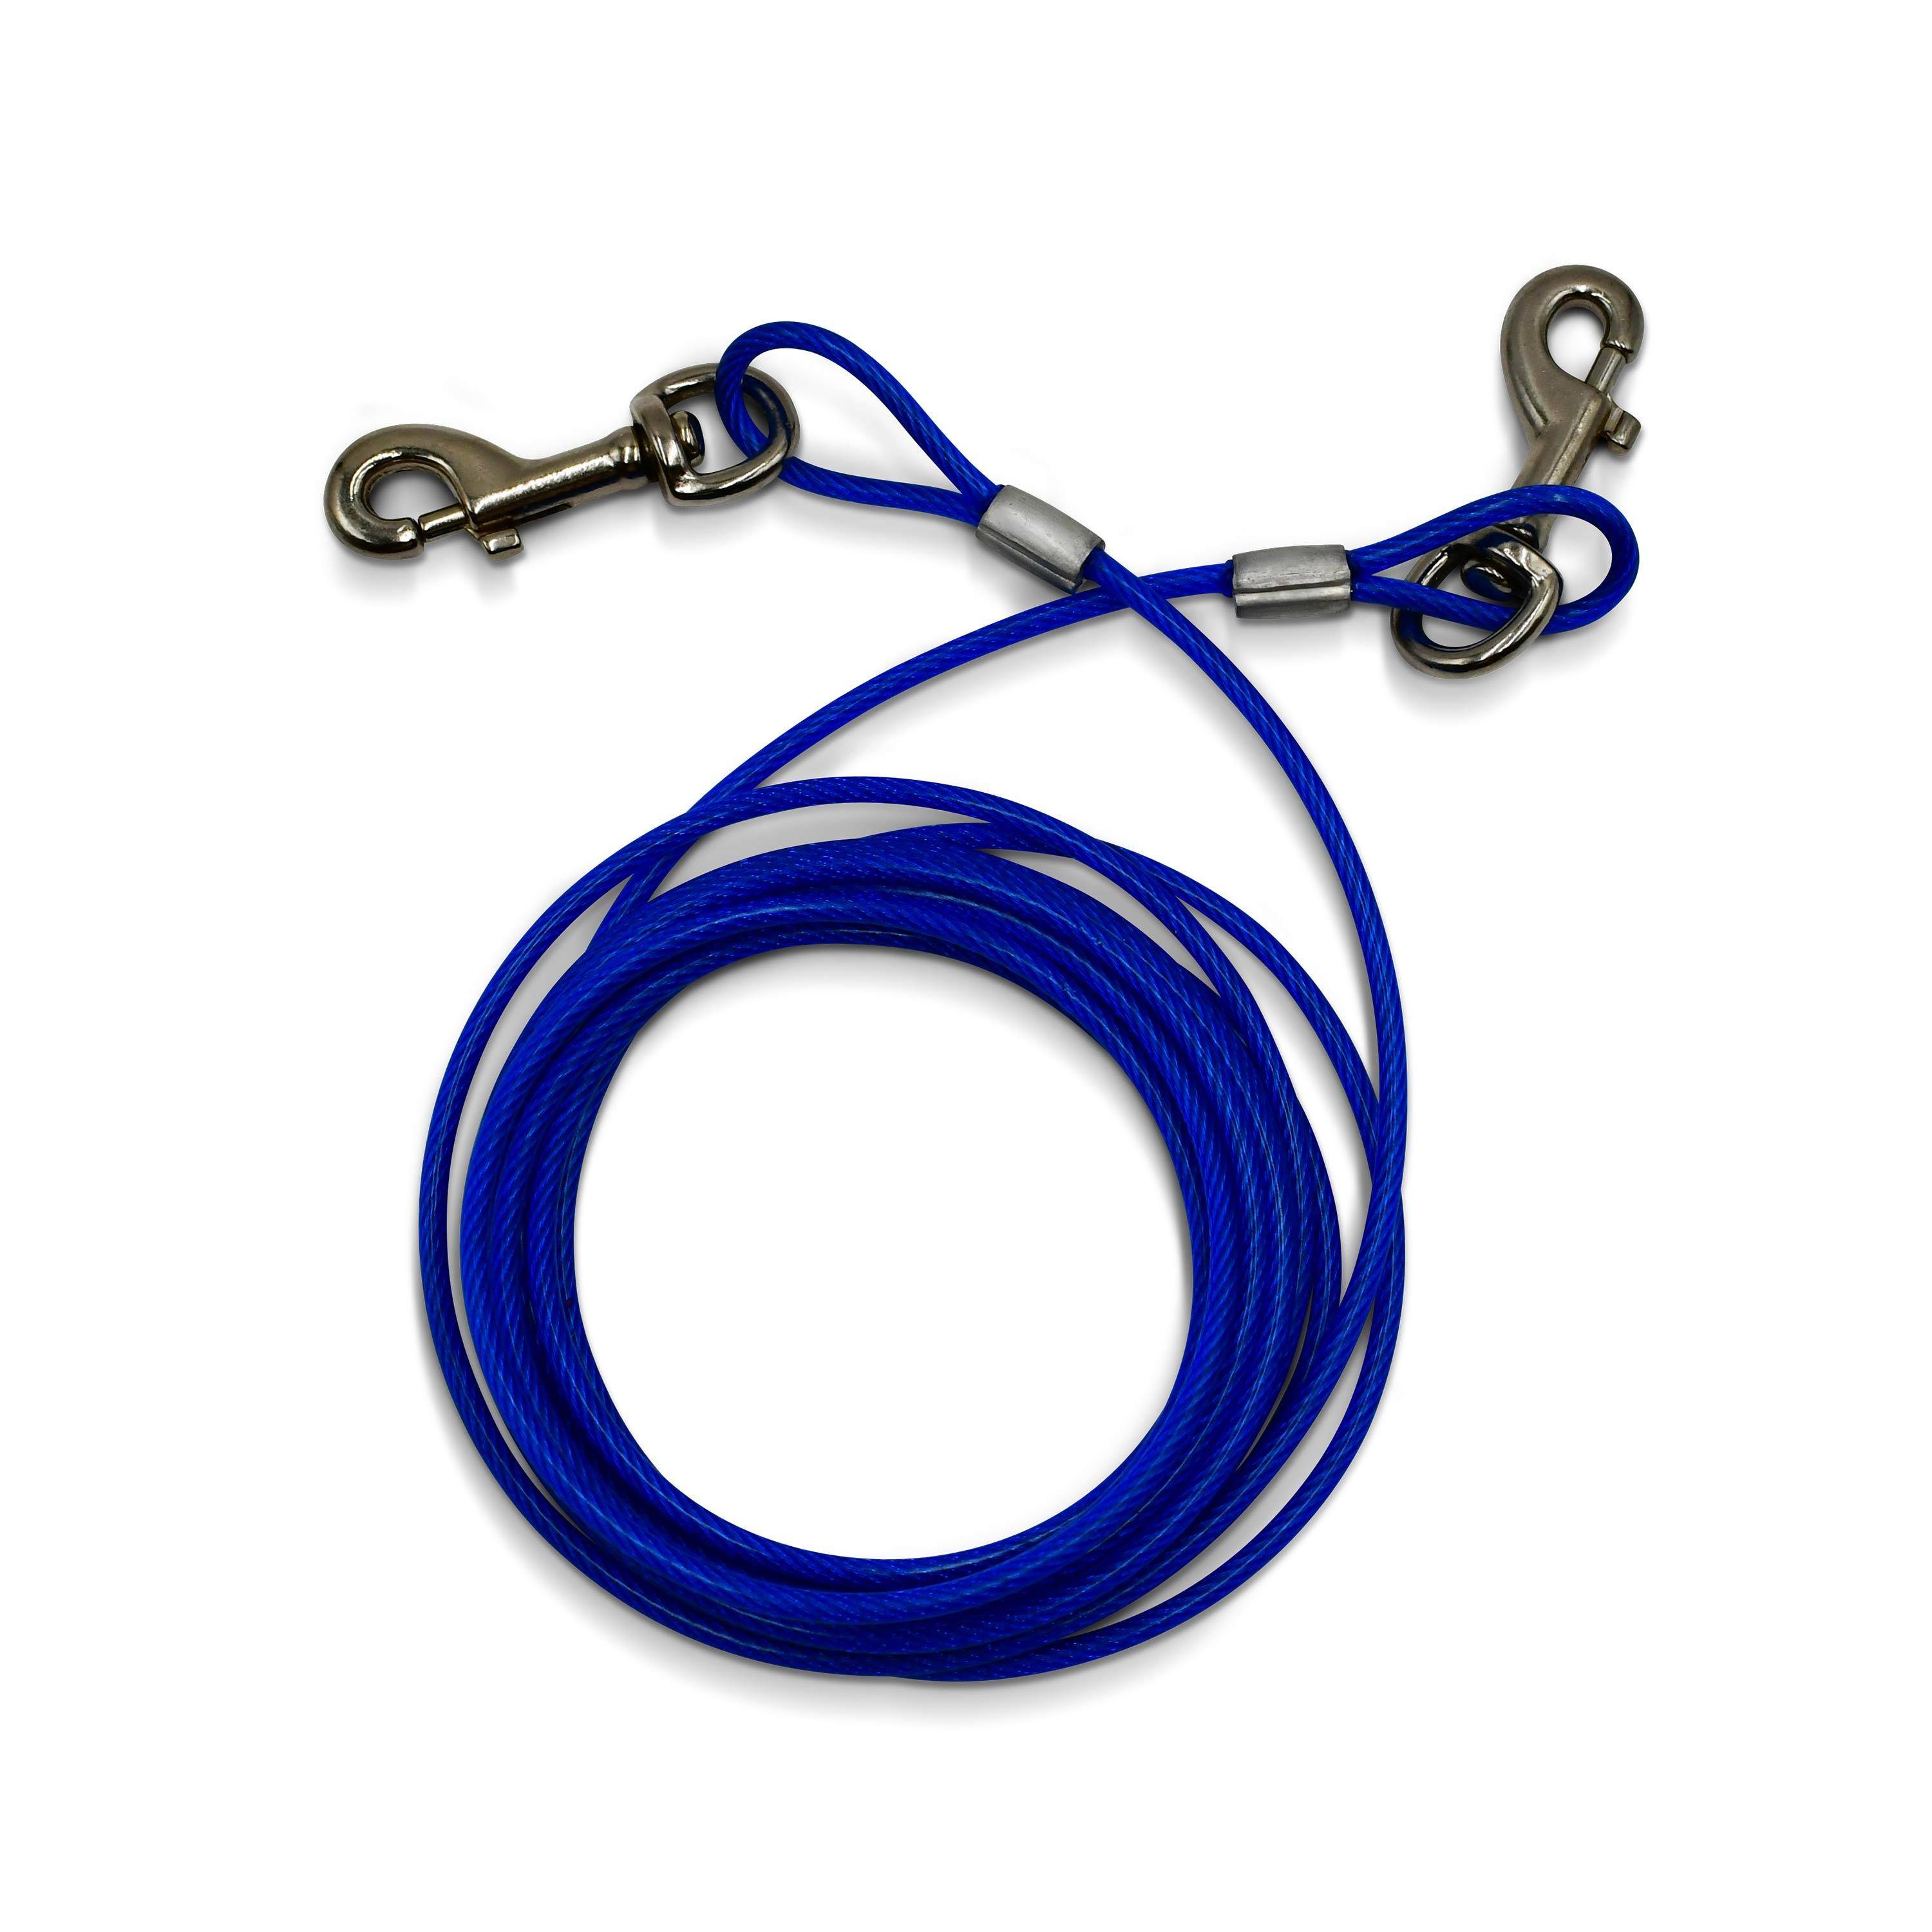 Câble gainé de 4.5m de long et 5mm d’épaisseur bleu, avec mousquetons Photo1